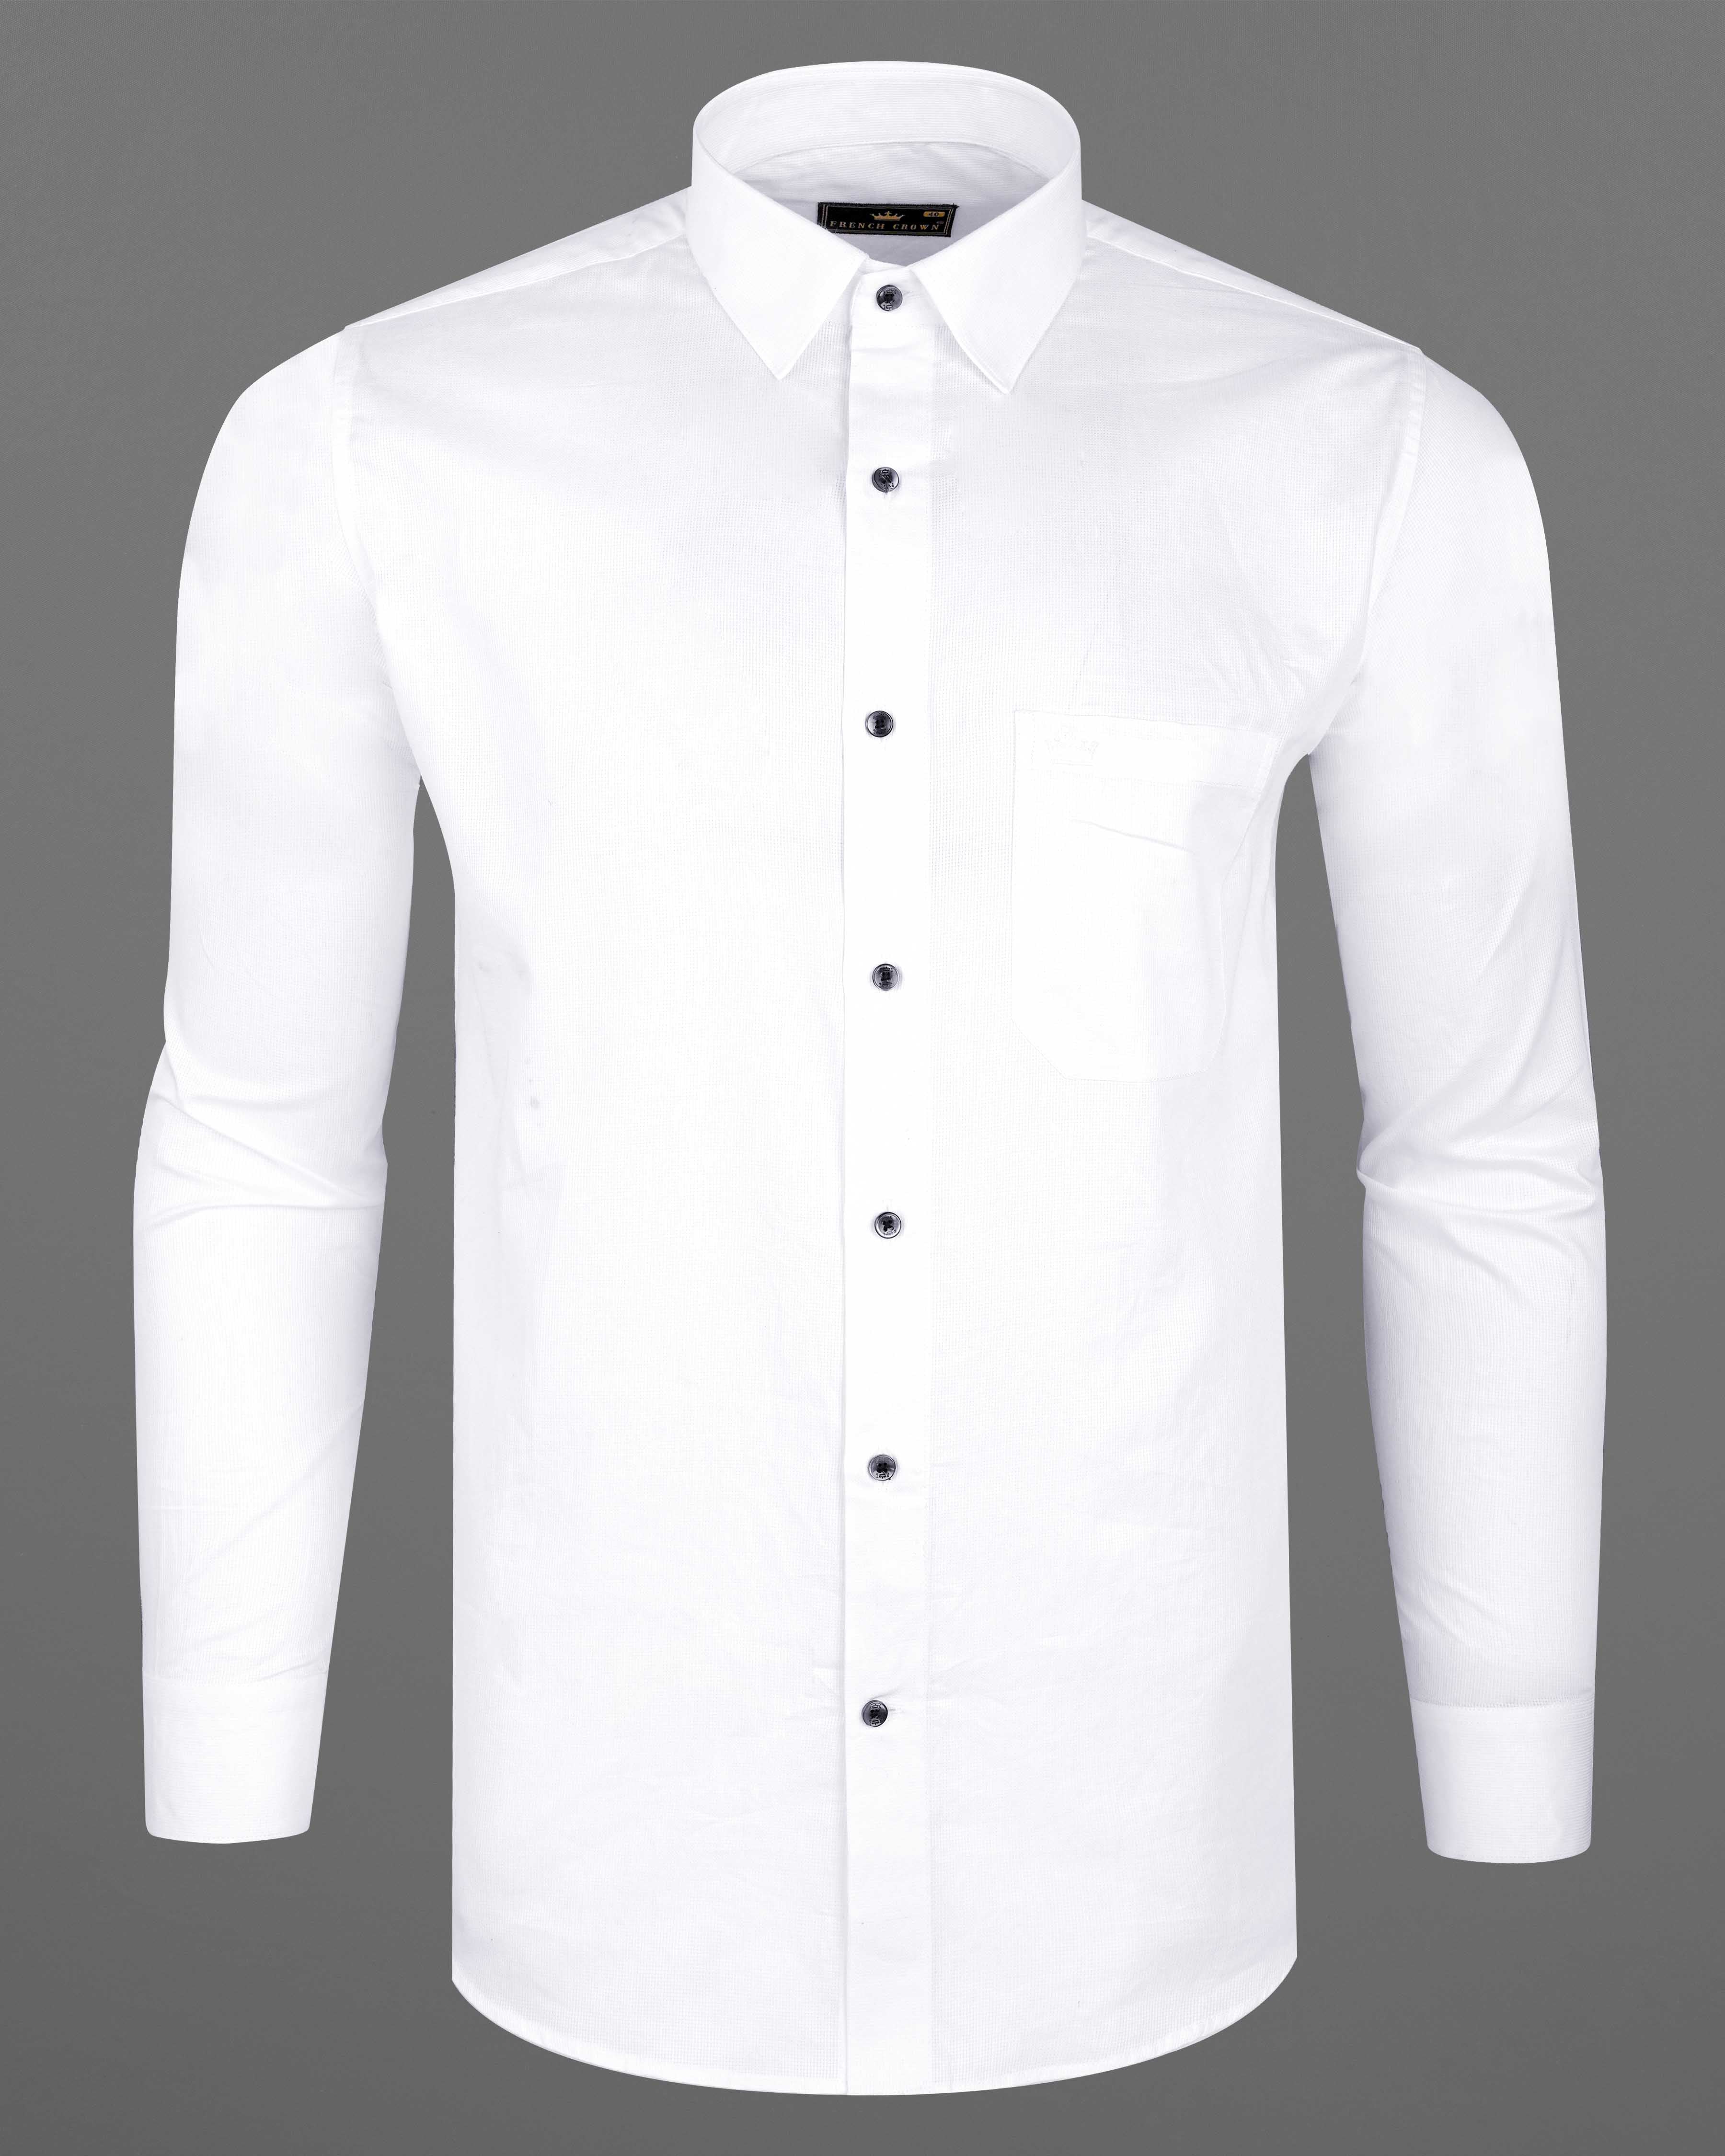 Bright White Dobby Textured Premium Giza Cotton Shirt 7868-BLK-38, 7868-BLK-H-38, 7868-BLK-39, 7868-BLK-H-39, 7868-BLK-40, 7868-BLK-H-40, 7868-BLK-42, 7868-BLK-H-42, 7868-BLK-44, 7868-BLK-H-44, 7868-BLK-46, 7868-BLK-H-46, 7868-BLK-48, 7868-BLK-H-48, 7868-BLK-50, 7868-BLK-H-50, 7868-BLK-52, 7868-BLK-H-52